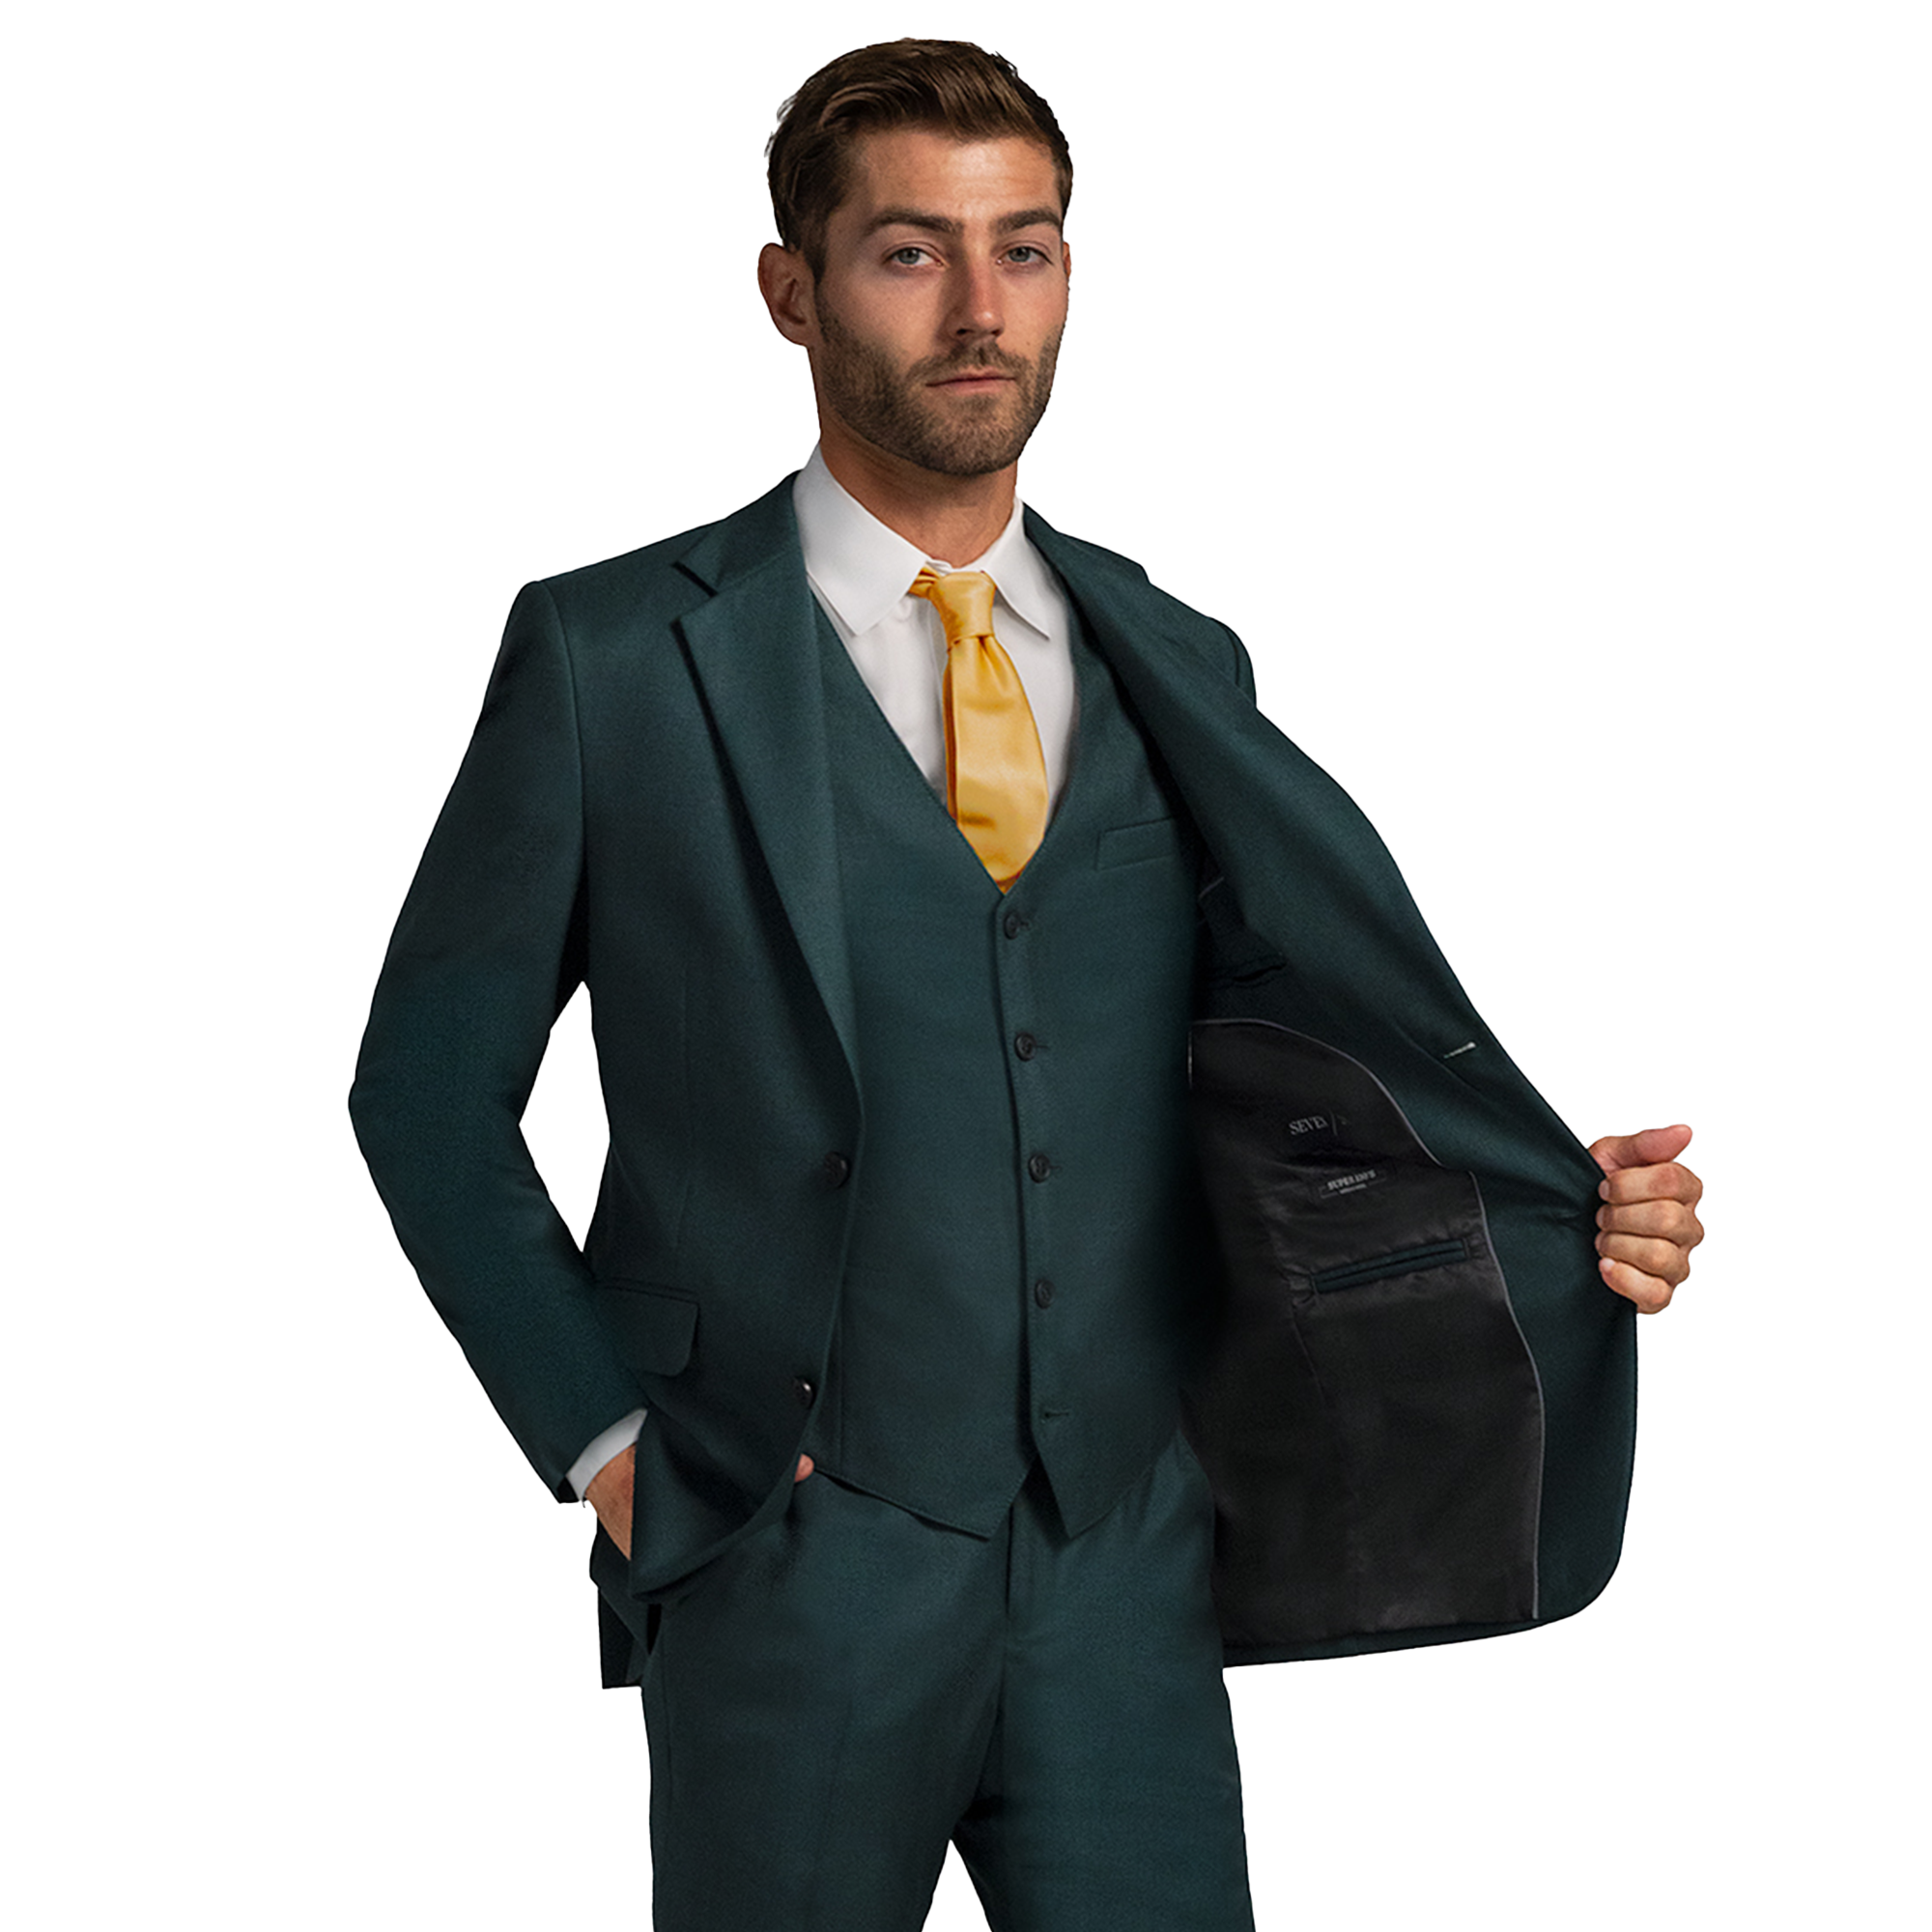 Hunter Green notch lapel suit on male model